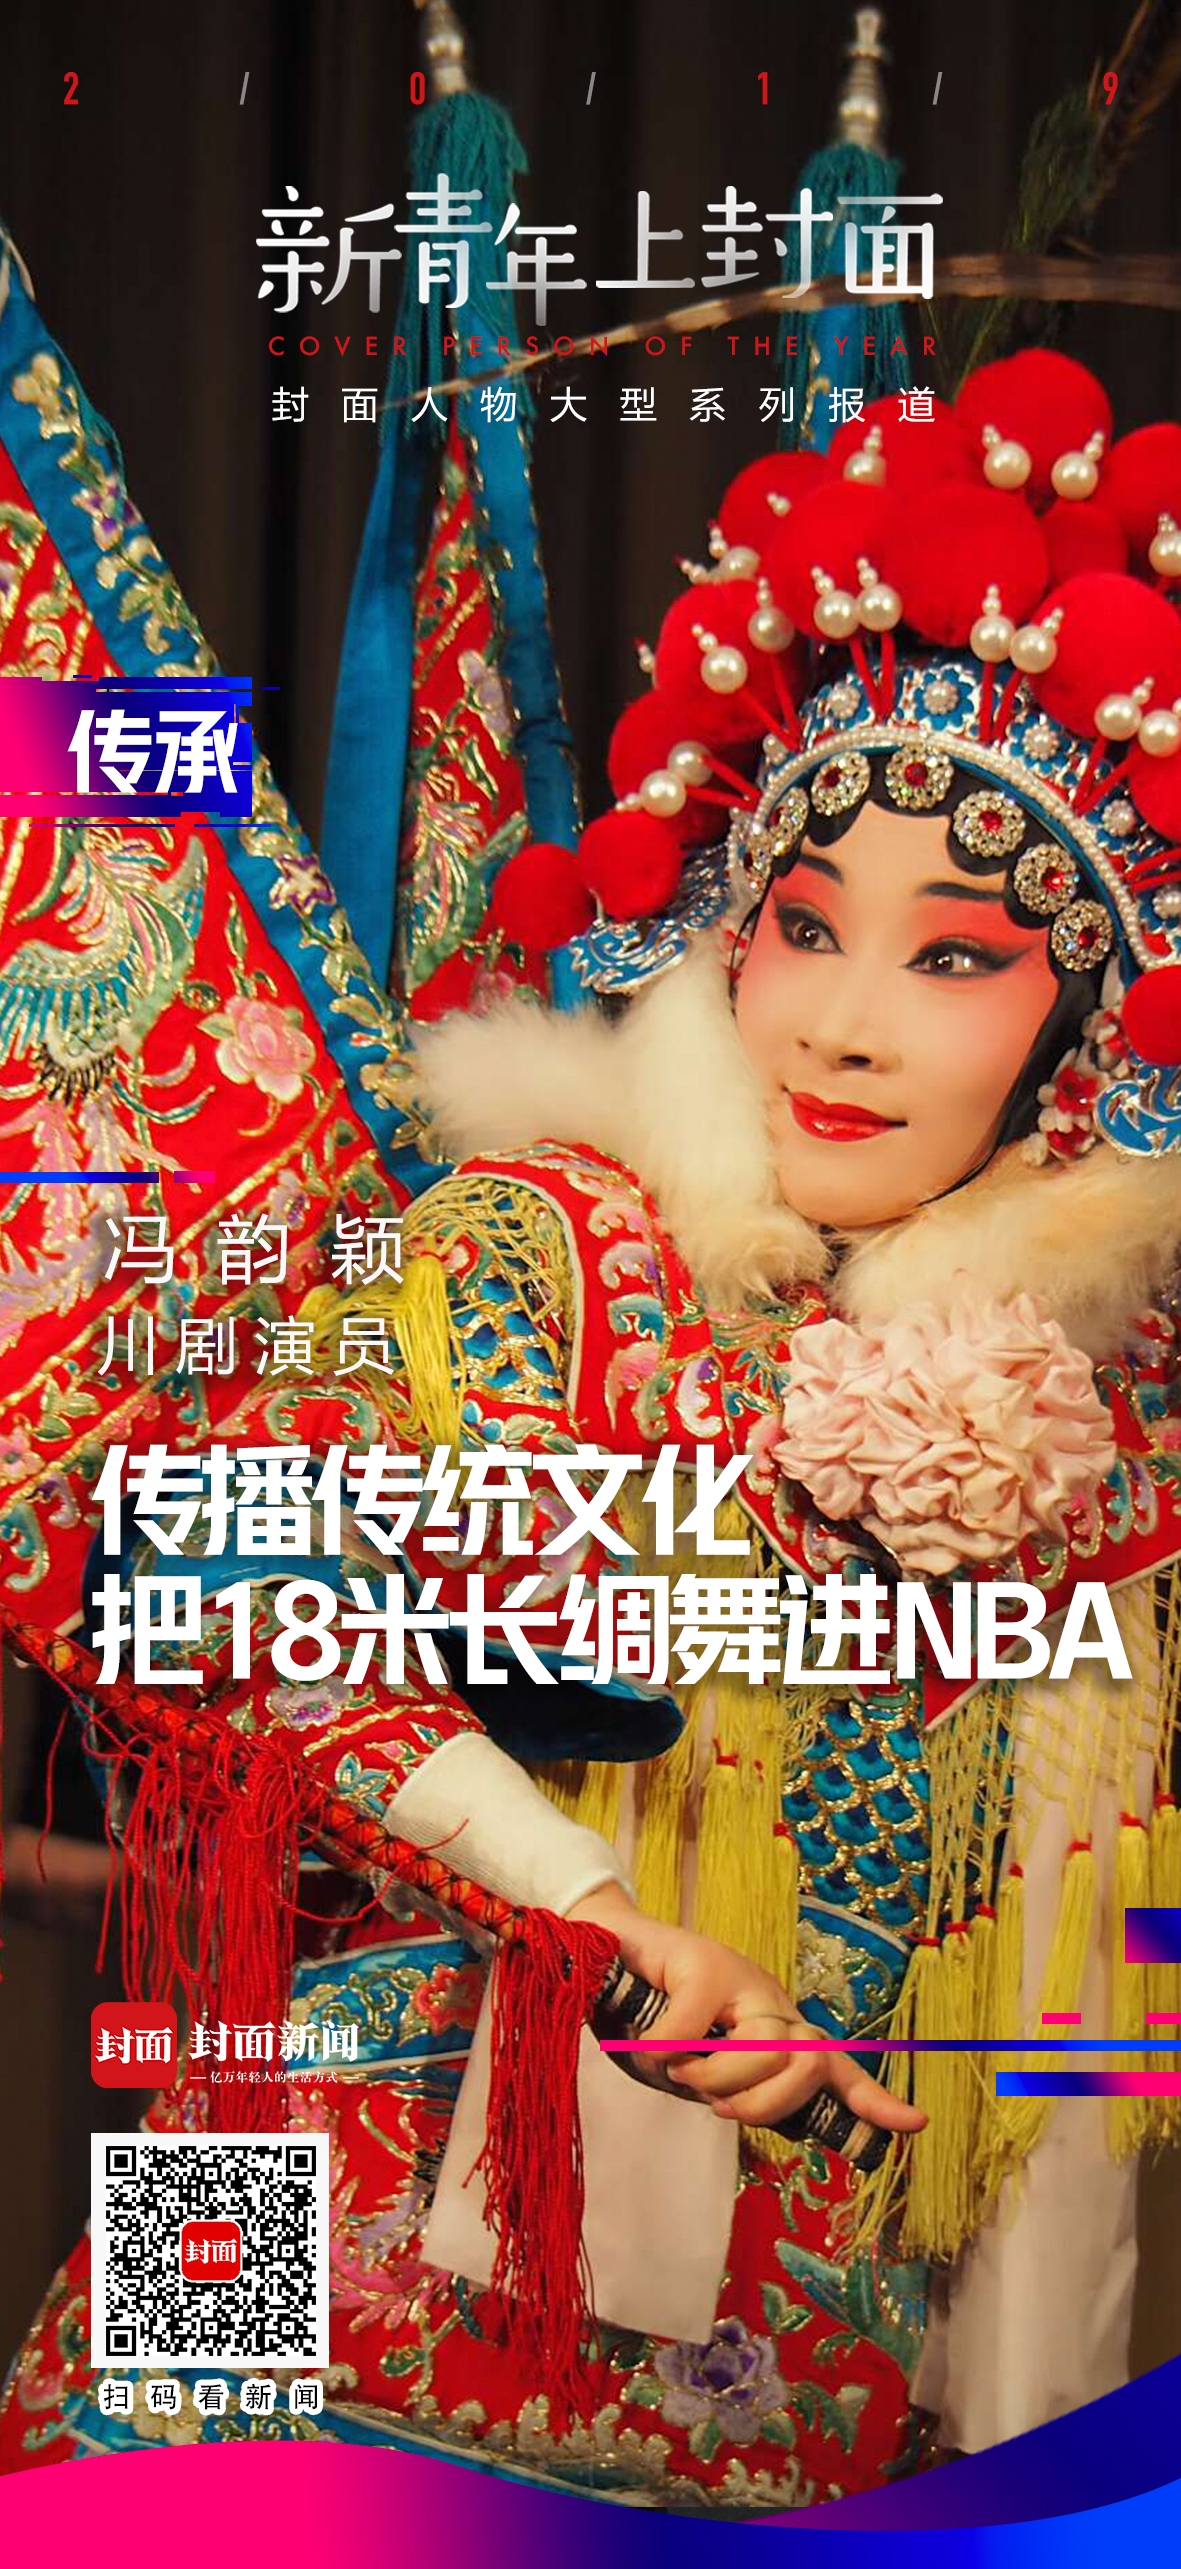 把18米长绸舞进NBA赛场 青年川剧演员冯韵颖的创新与传承 - 封面新闻